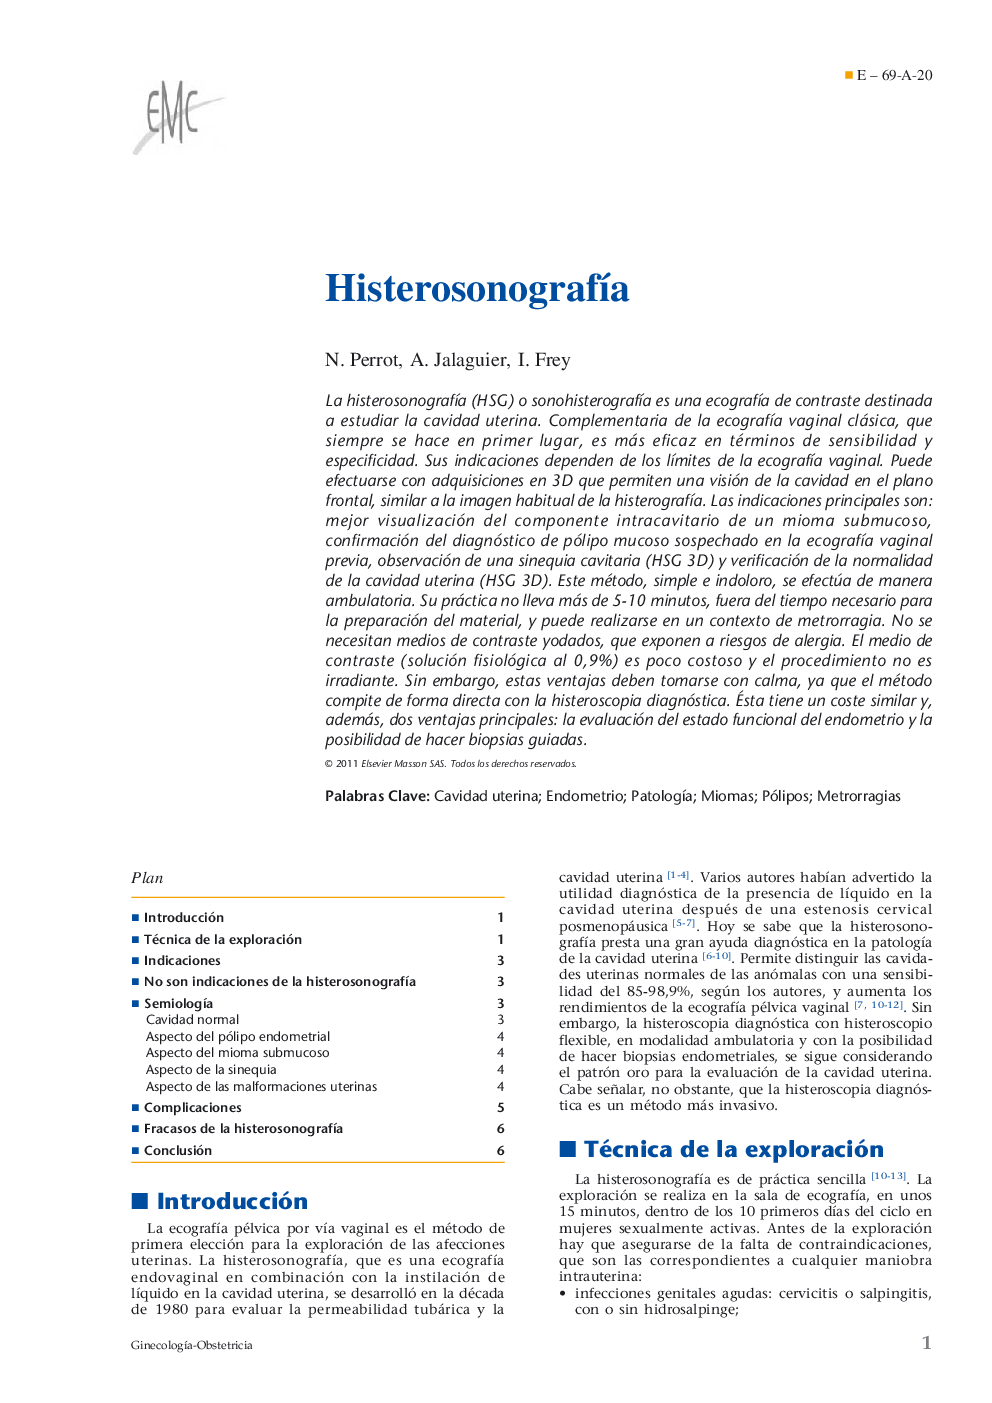 HisterosonografÃ­a